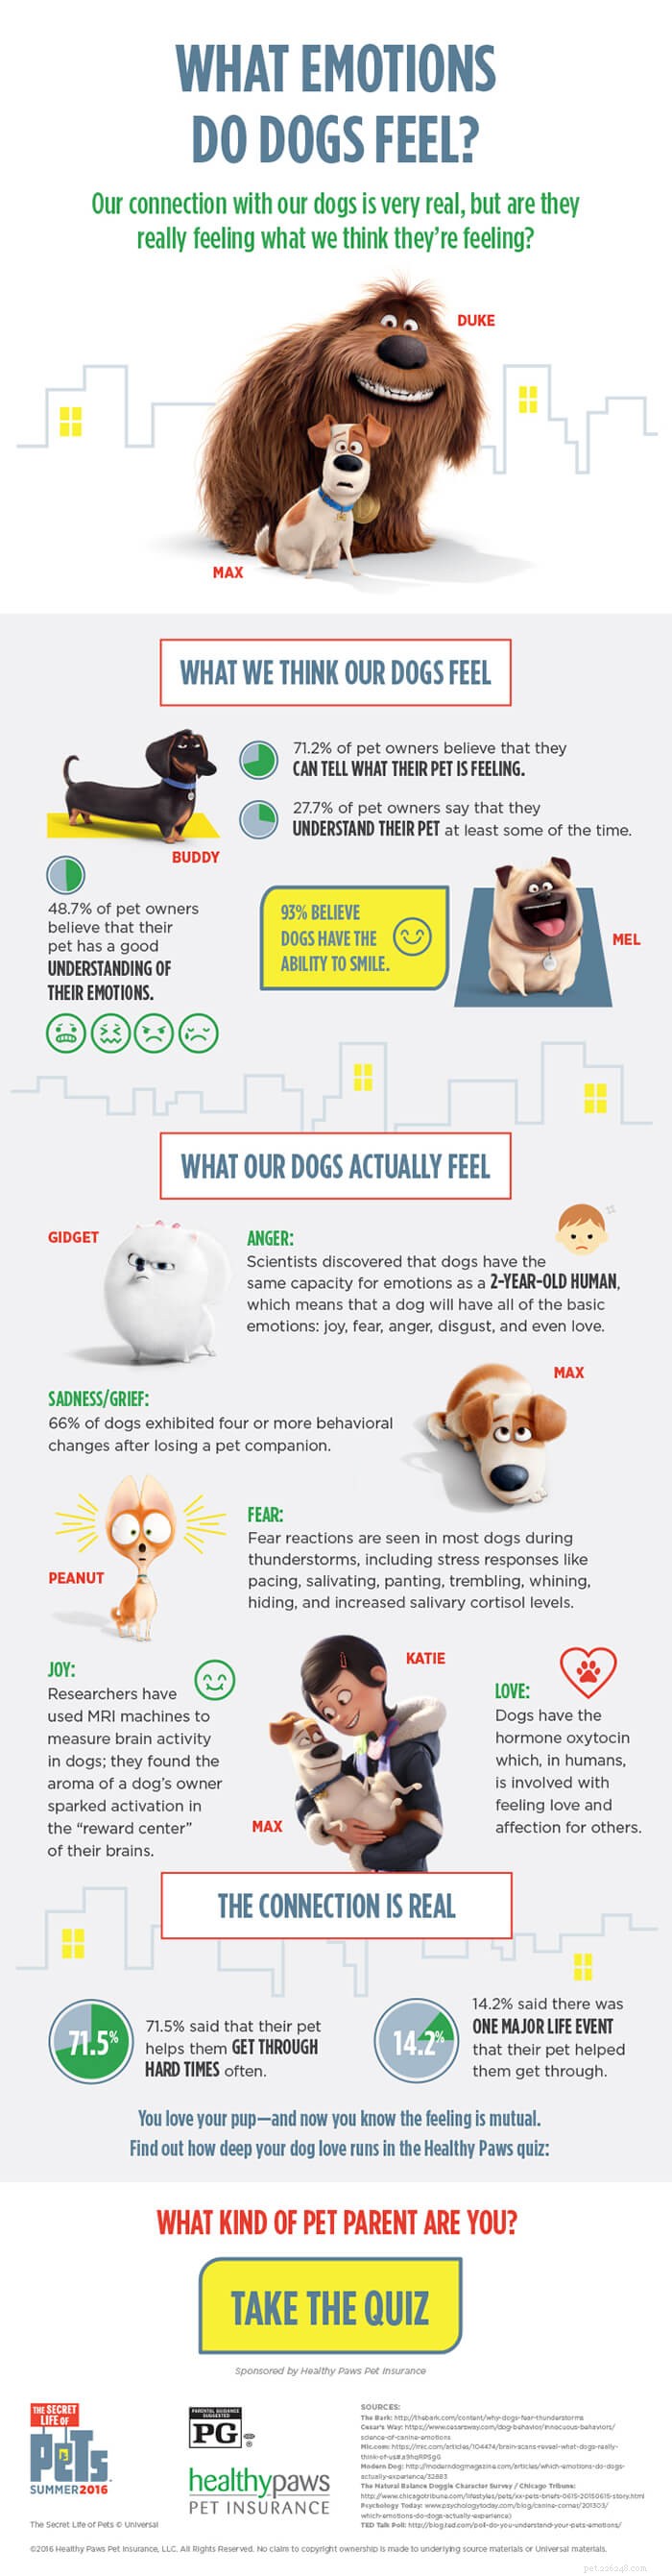 Какие эмоции испытывают собаки? [Инфографика]